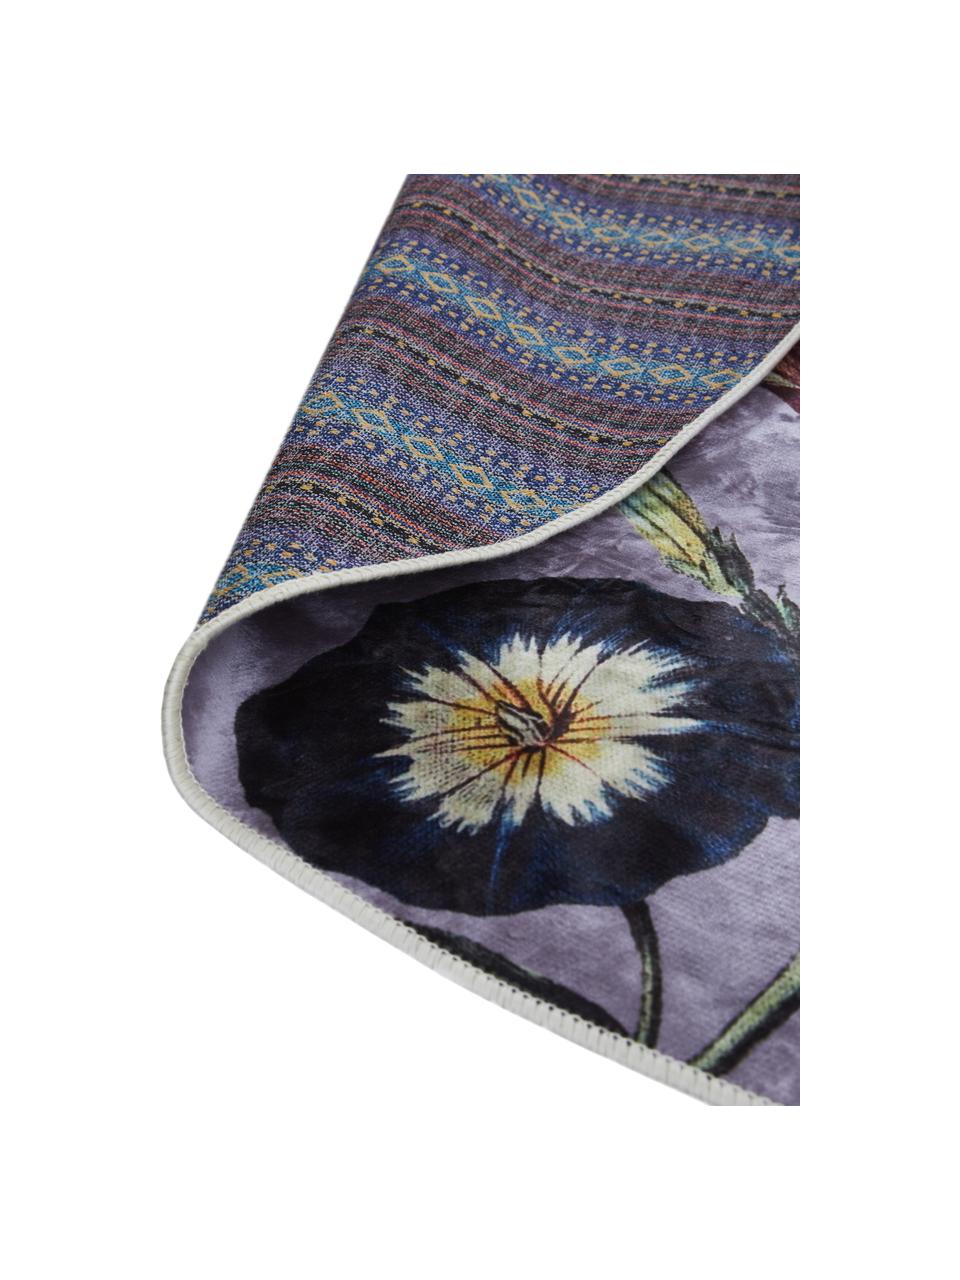 Tapis rond imprimé floral Filou, Lilas, multicolore